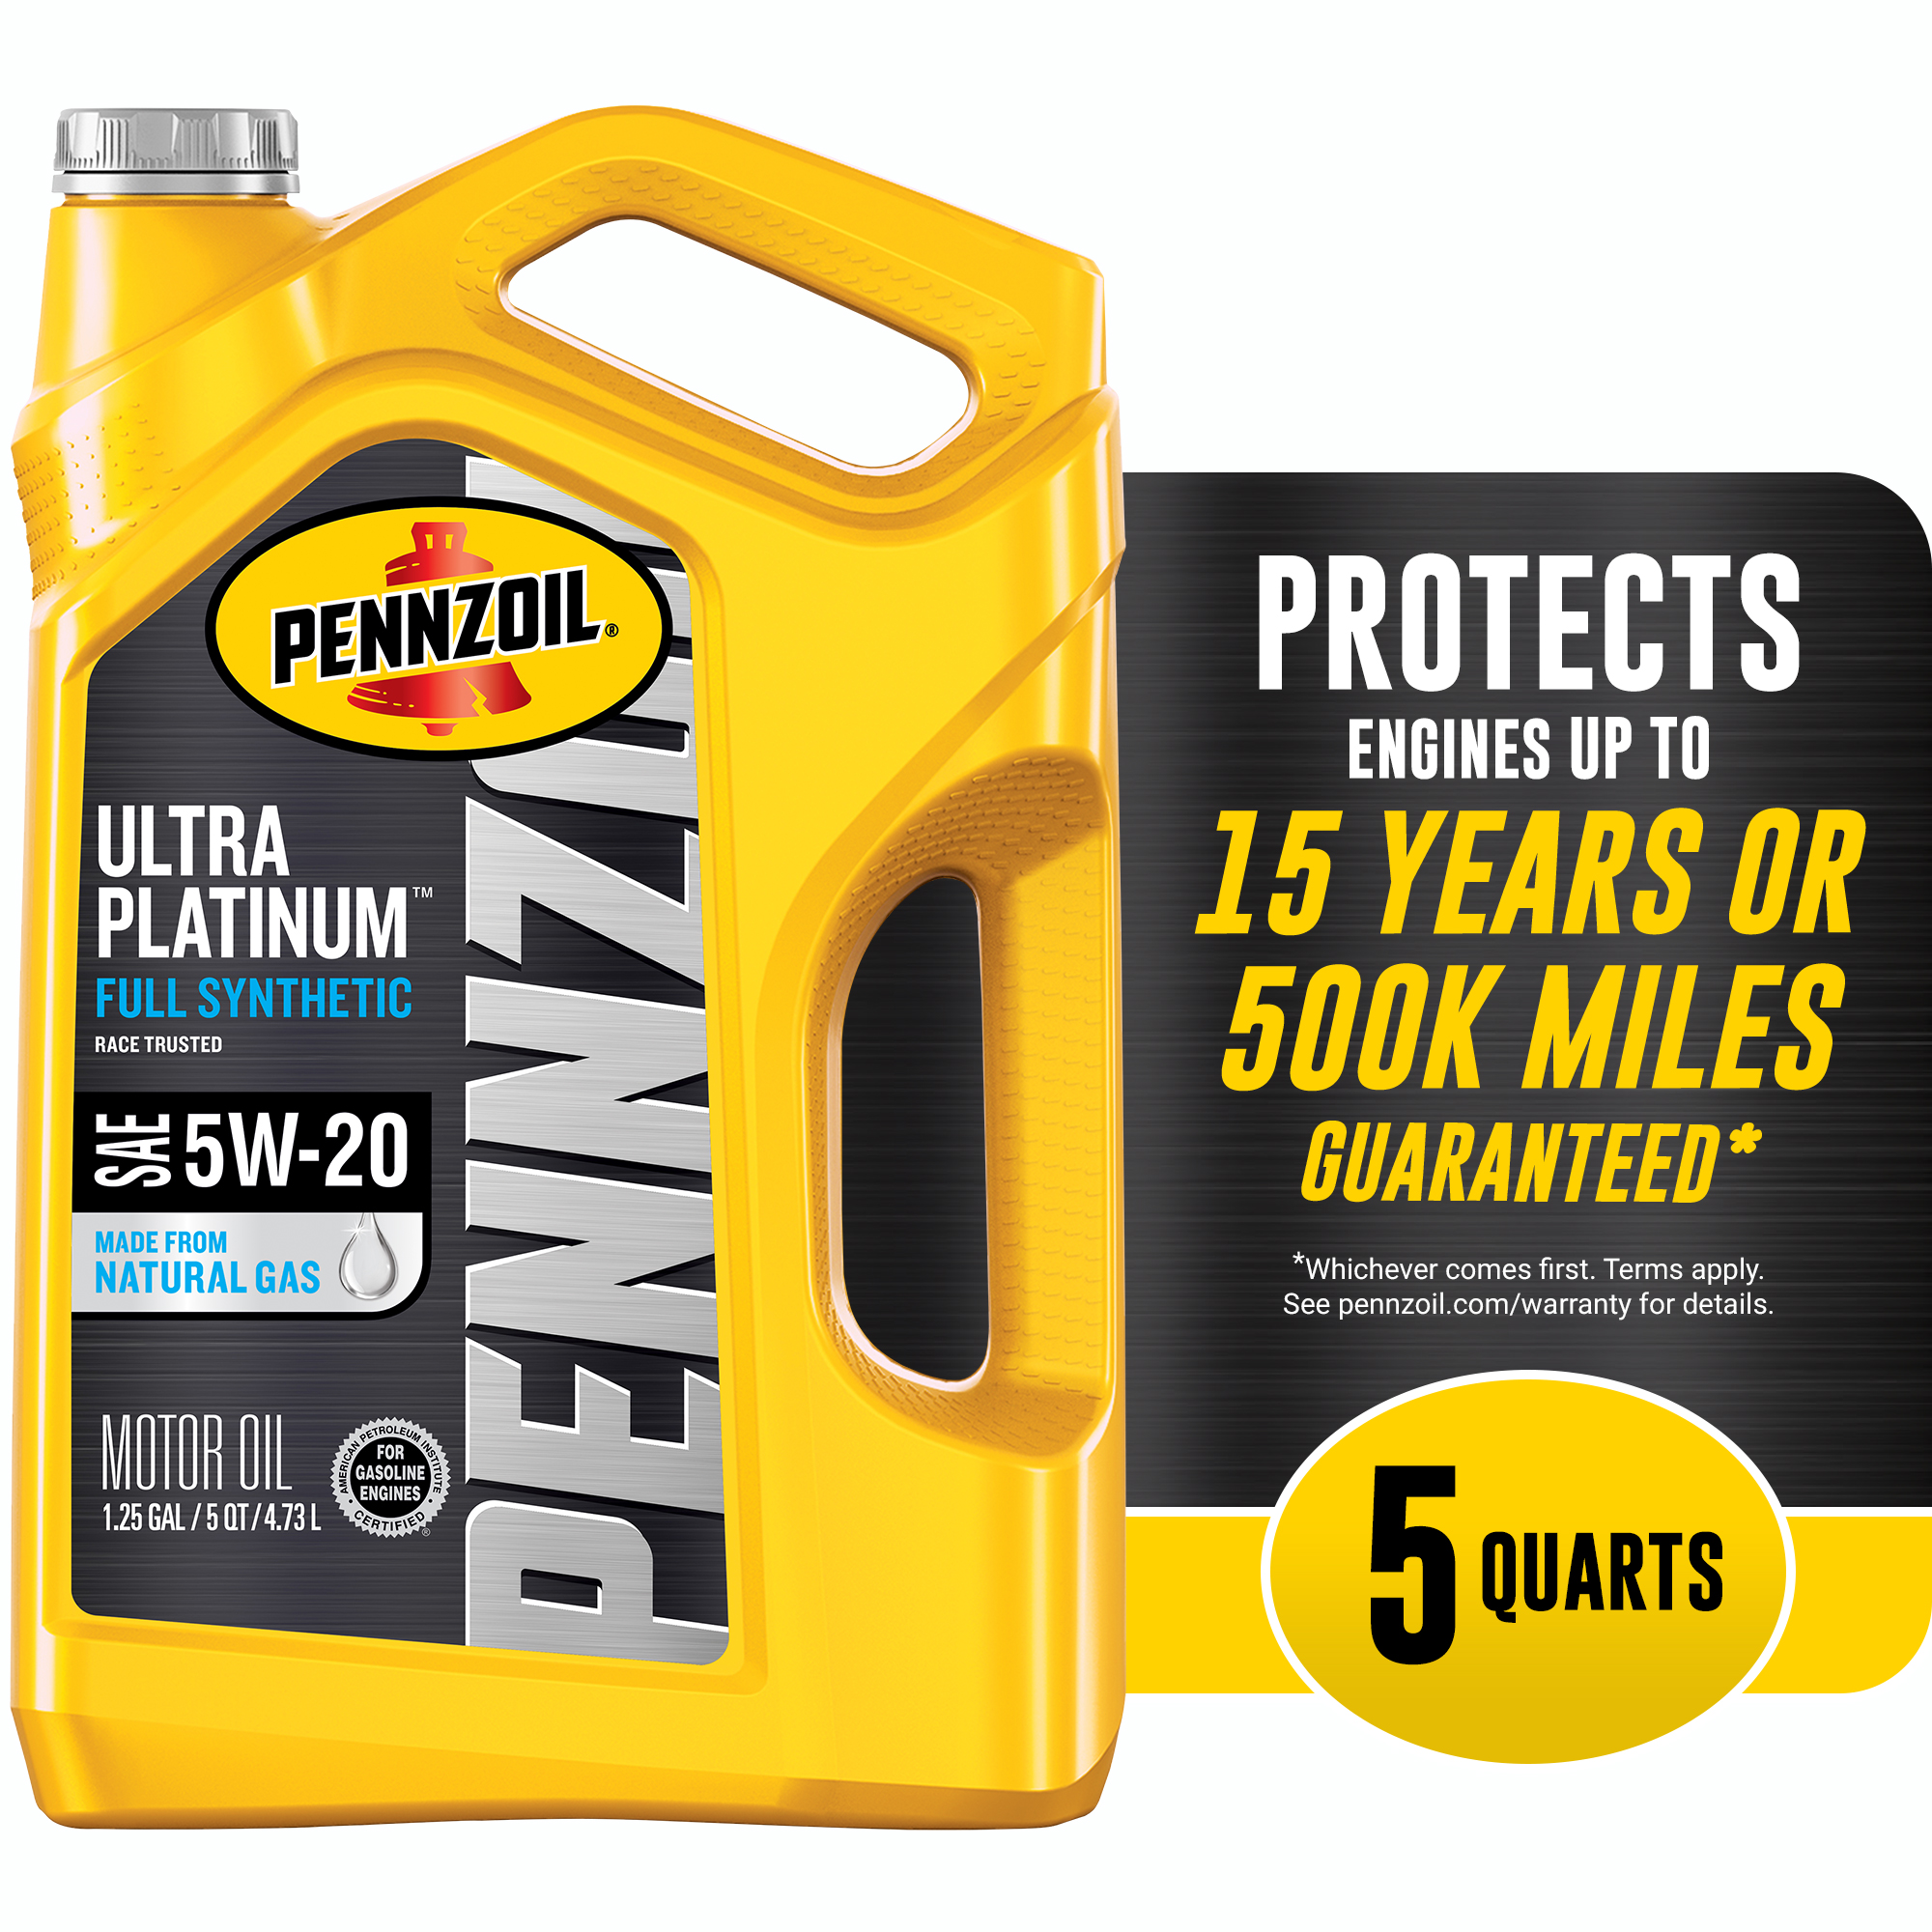 Pennzoil Ultra Platinum 5W-20 Full Synthetic Motor Oil, 5 Quart - image 1 of 7